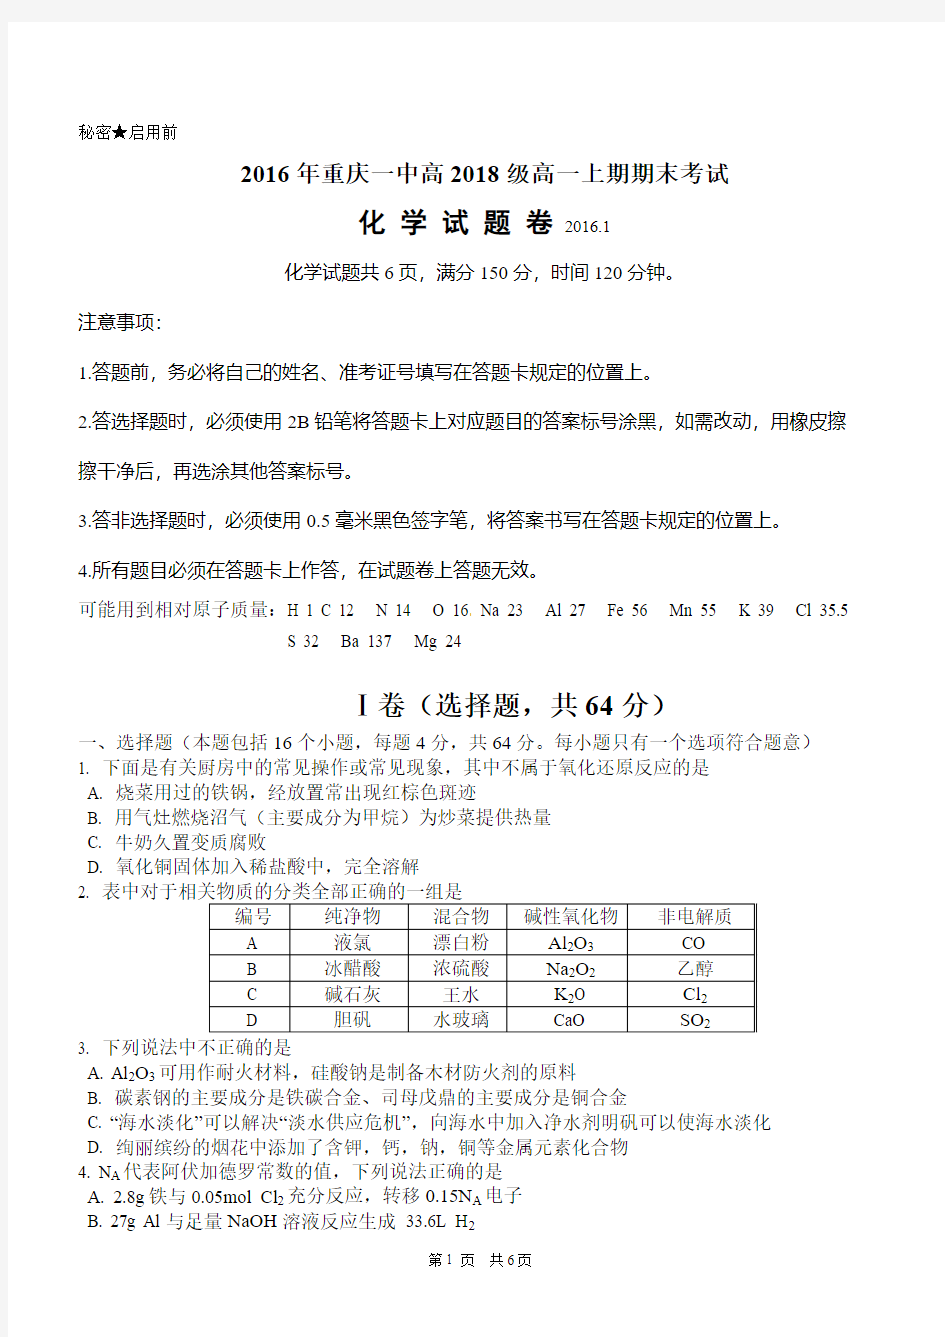 2016年重庆一中高2018级高一上期期末考试化学试卷、答案